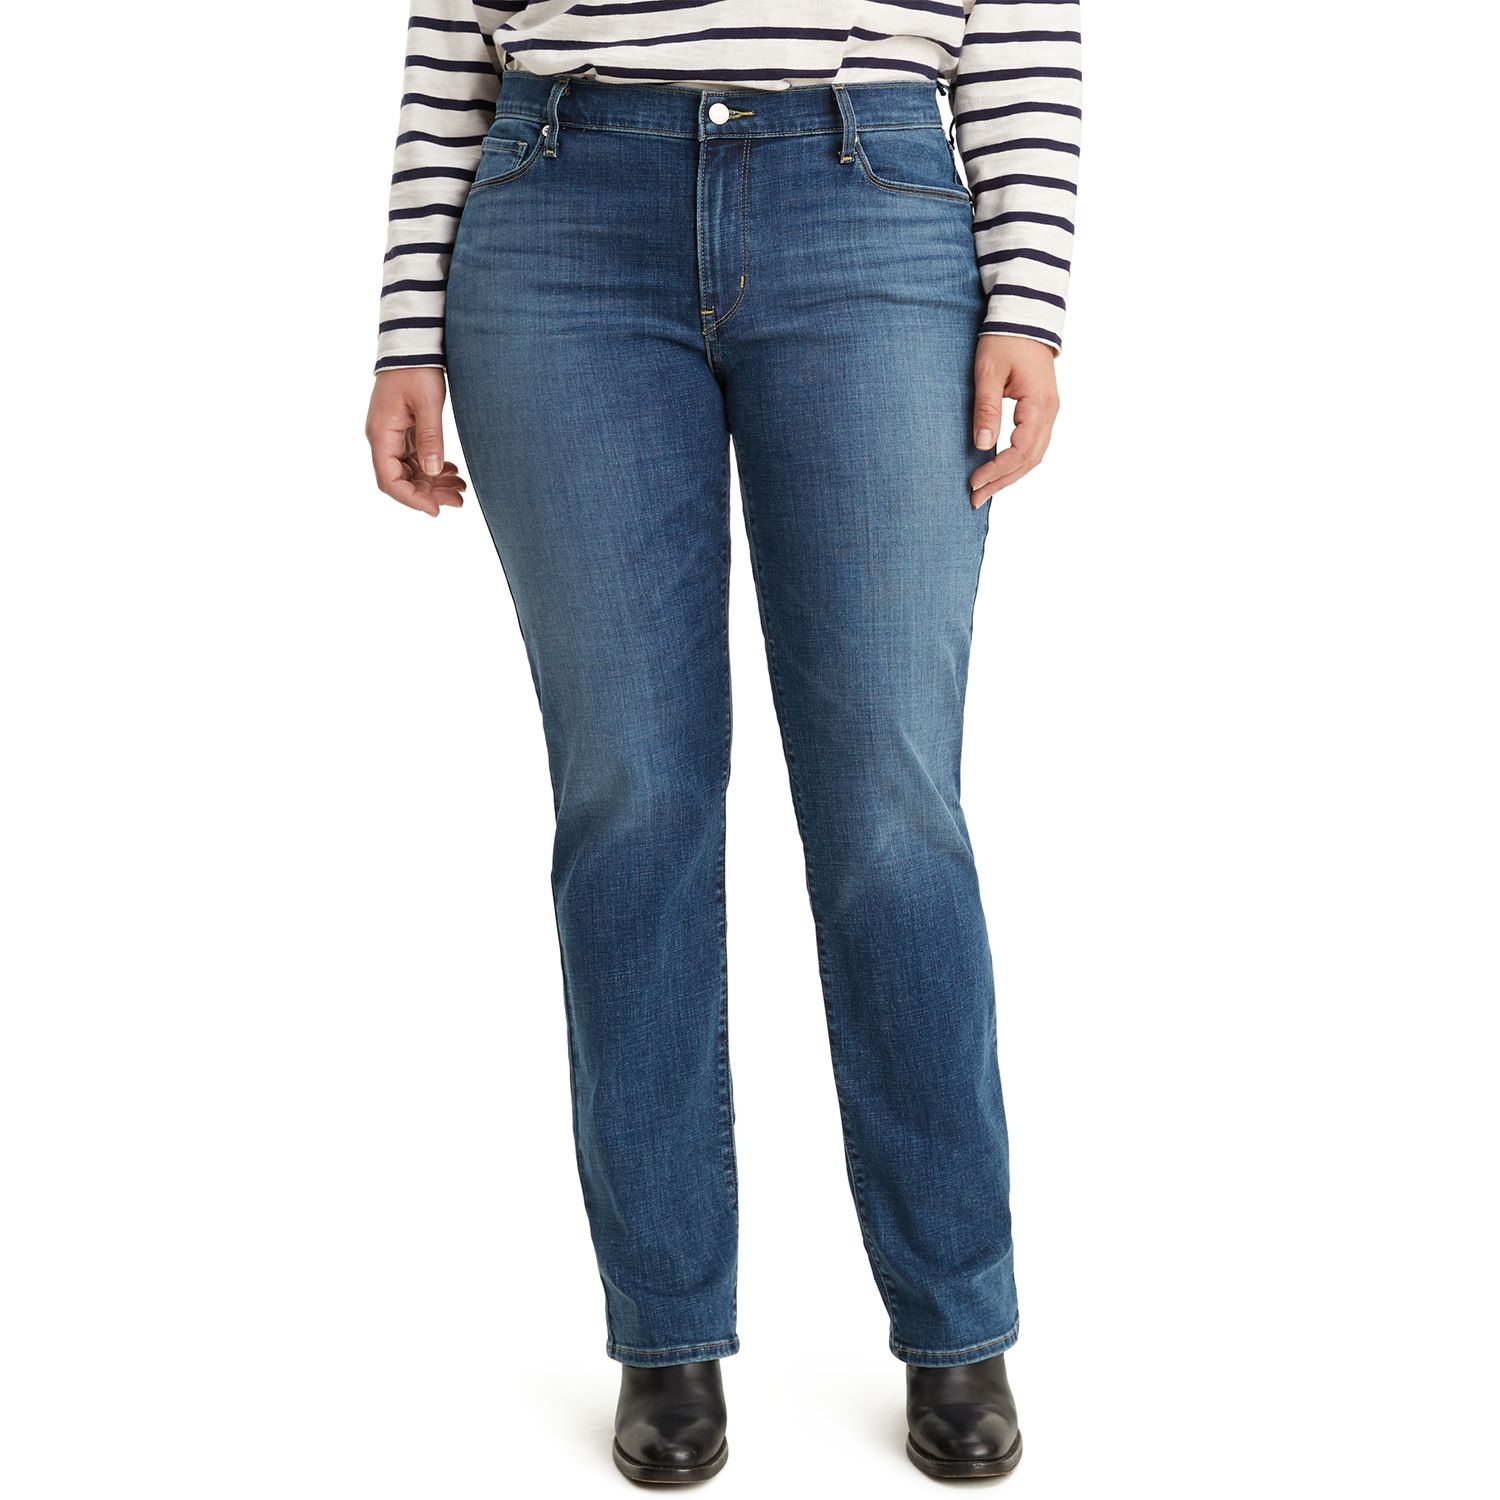 levis 512 womens jeans plus size